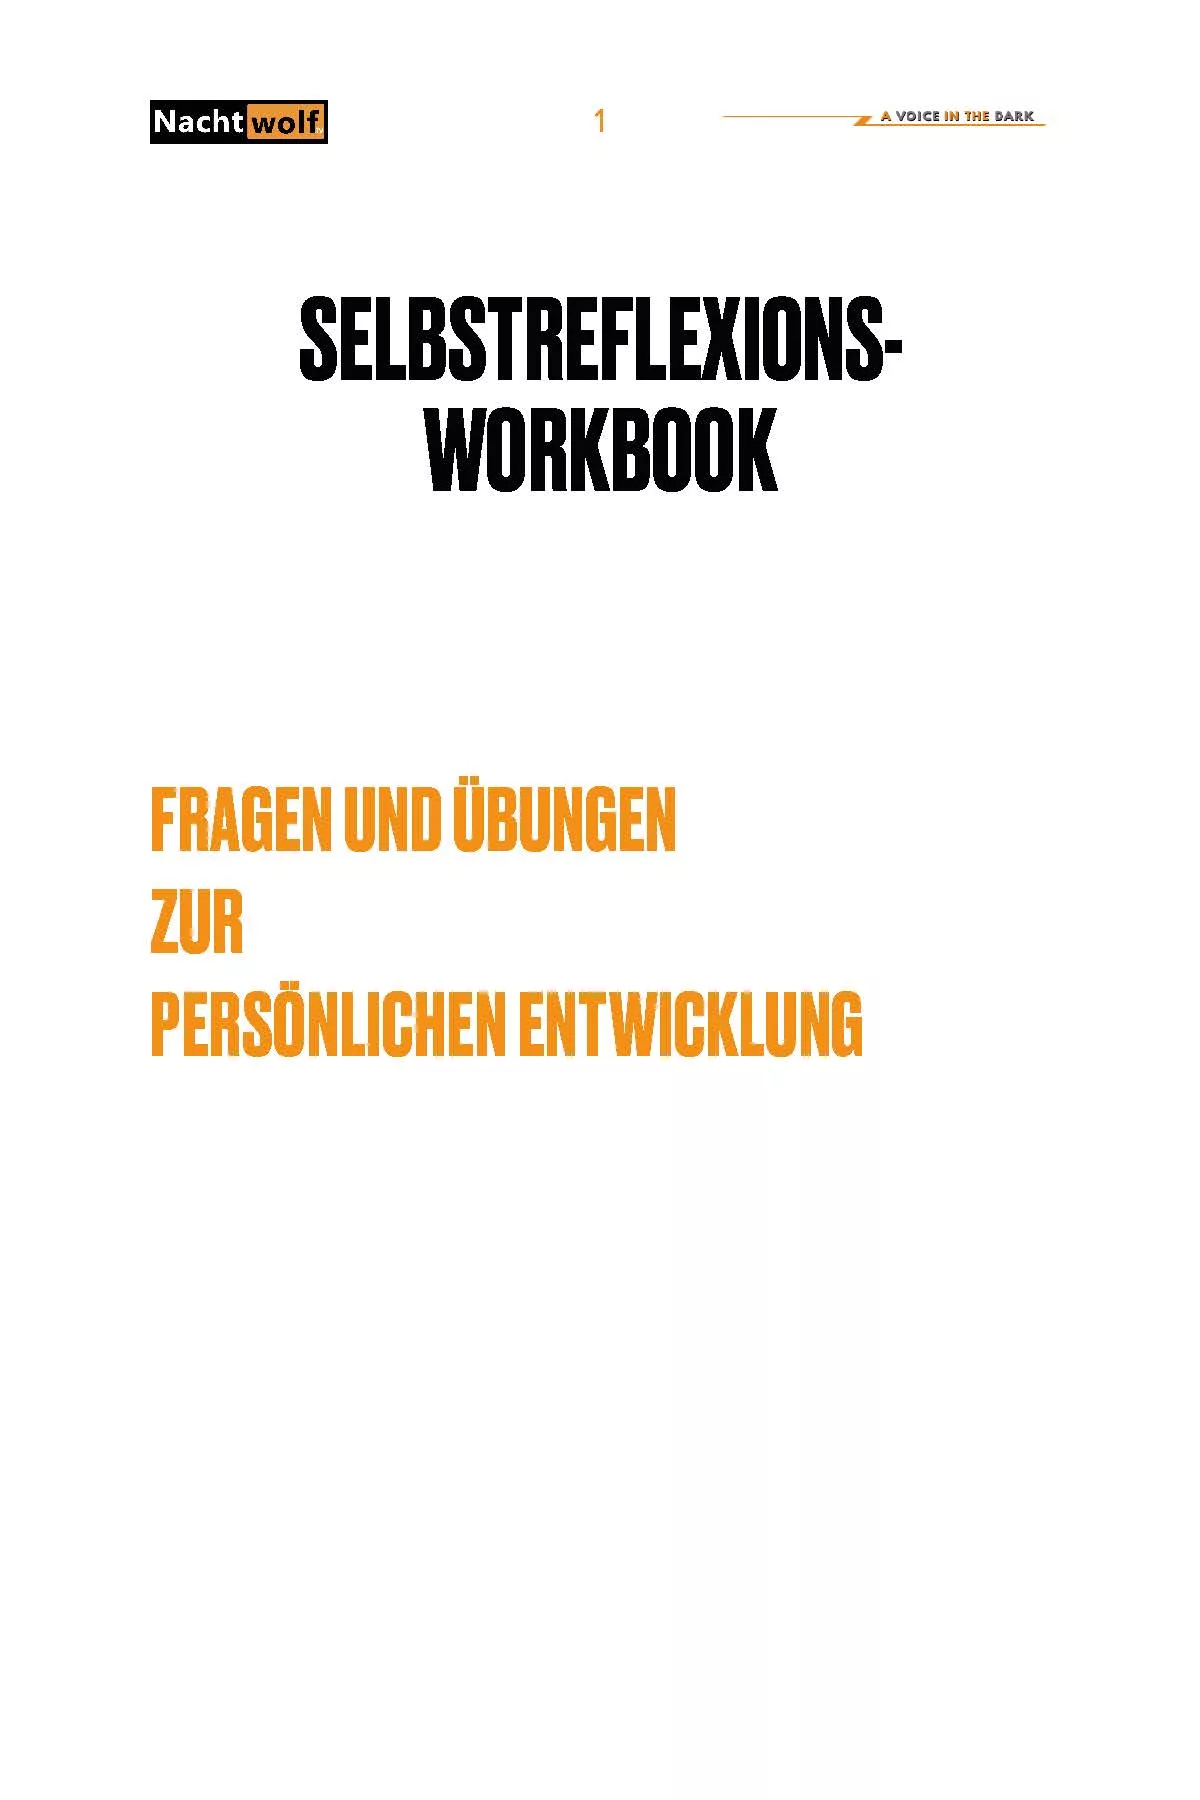 Selbstreflexions Workbook Seite 01 Jpg • Nachtwolf.tv